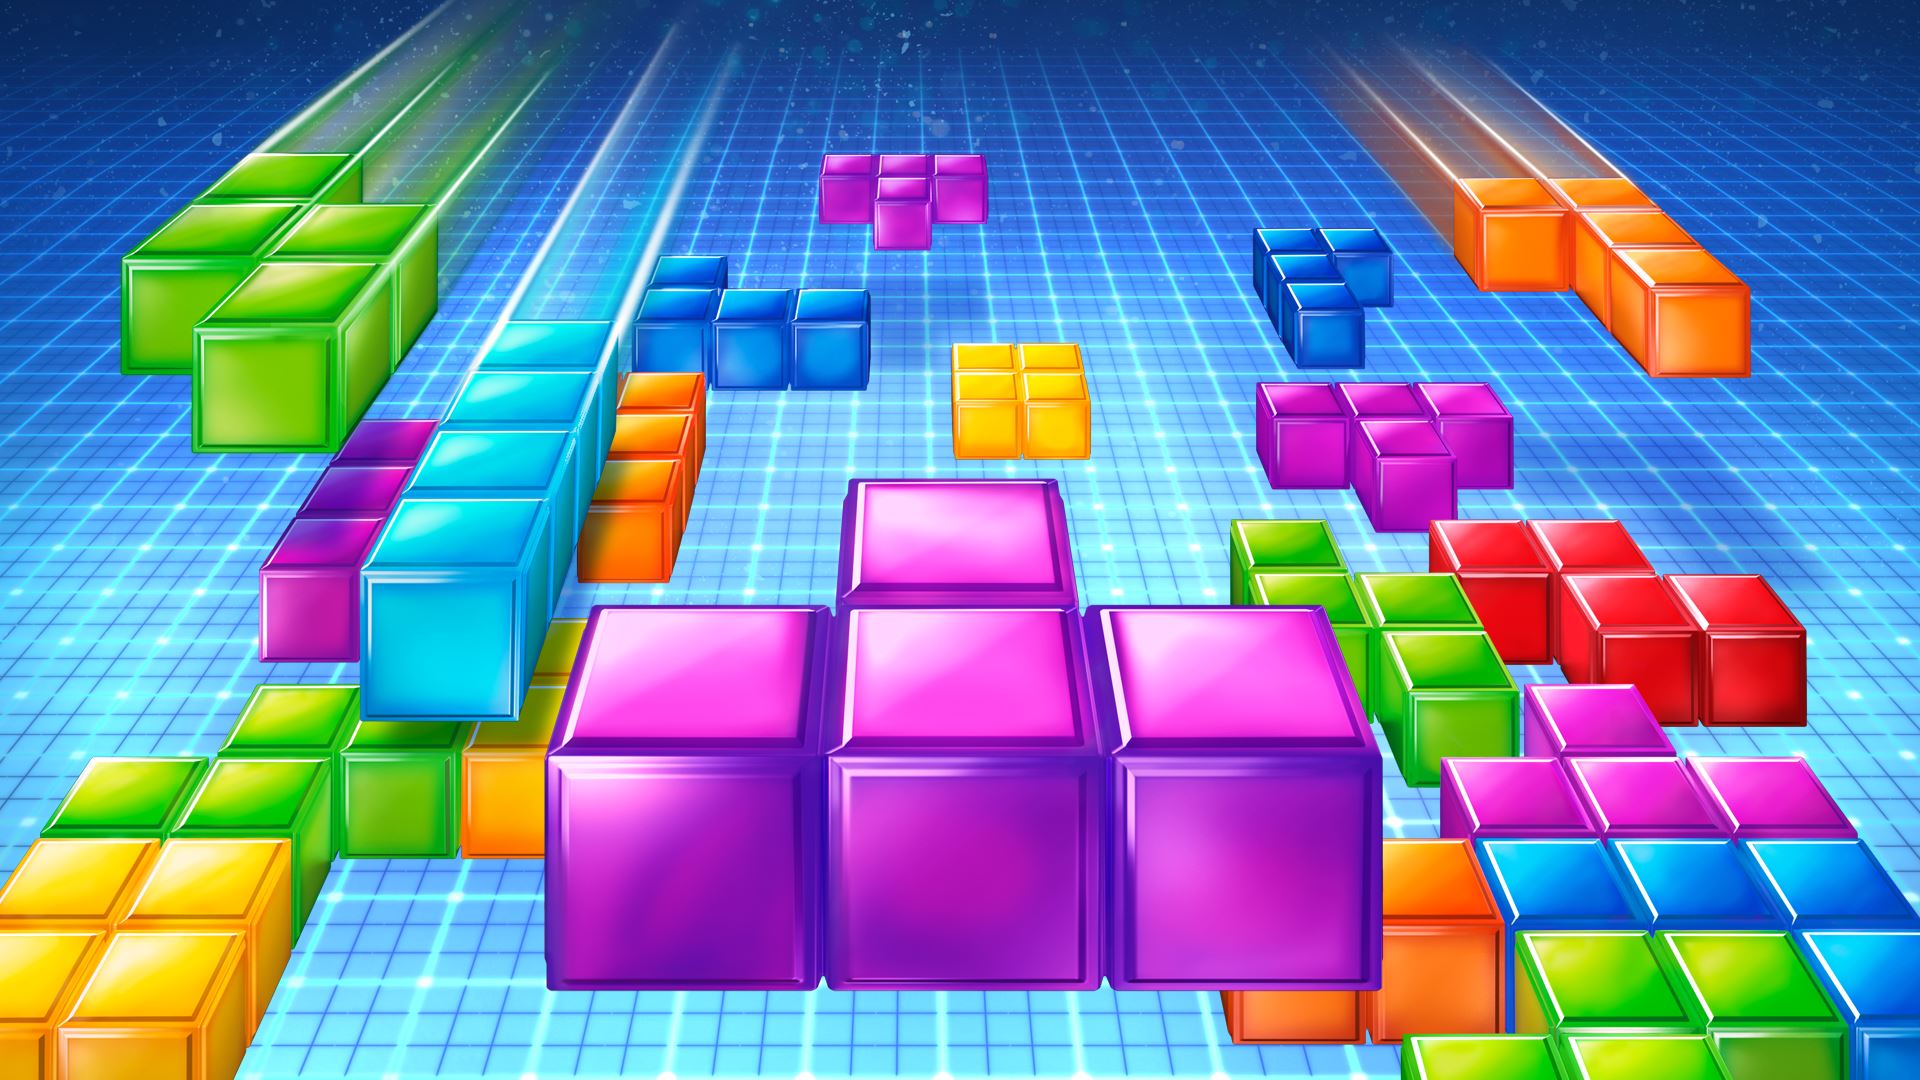 Bien jouÃ© : il bat un record de Tetris sans le faire exprÃ¨s - Numerama